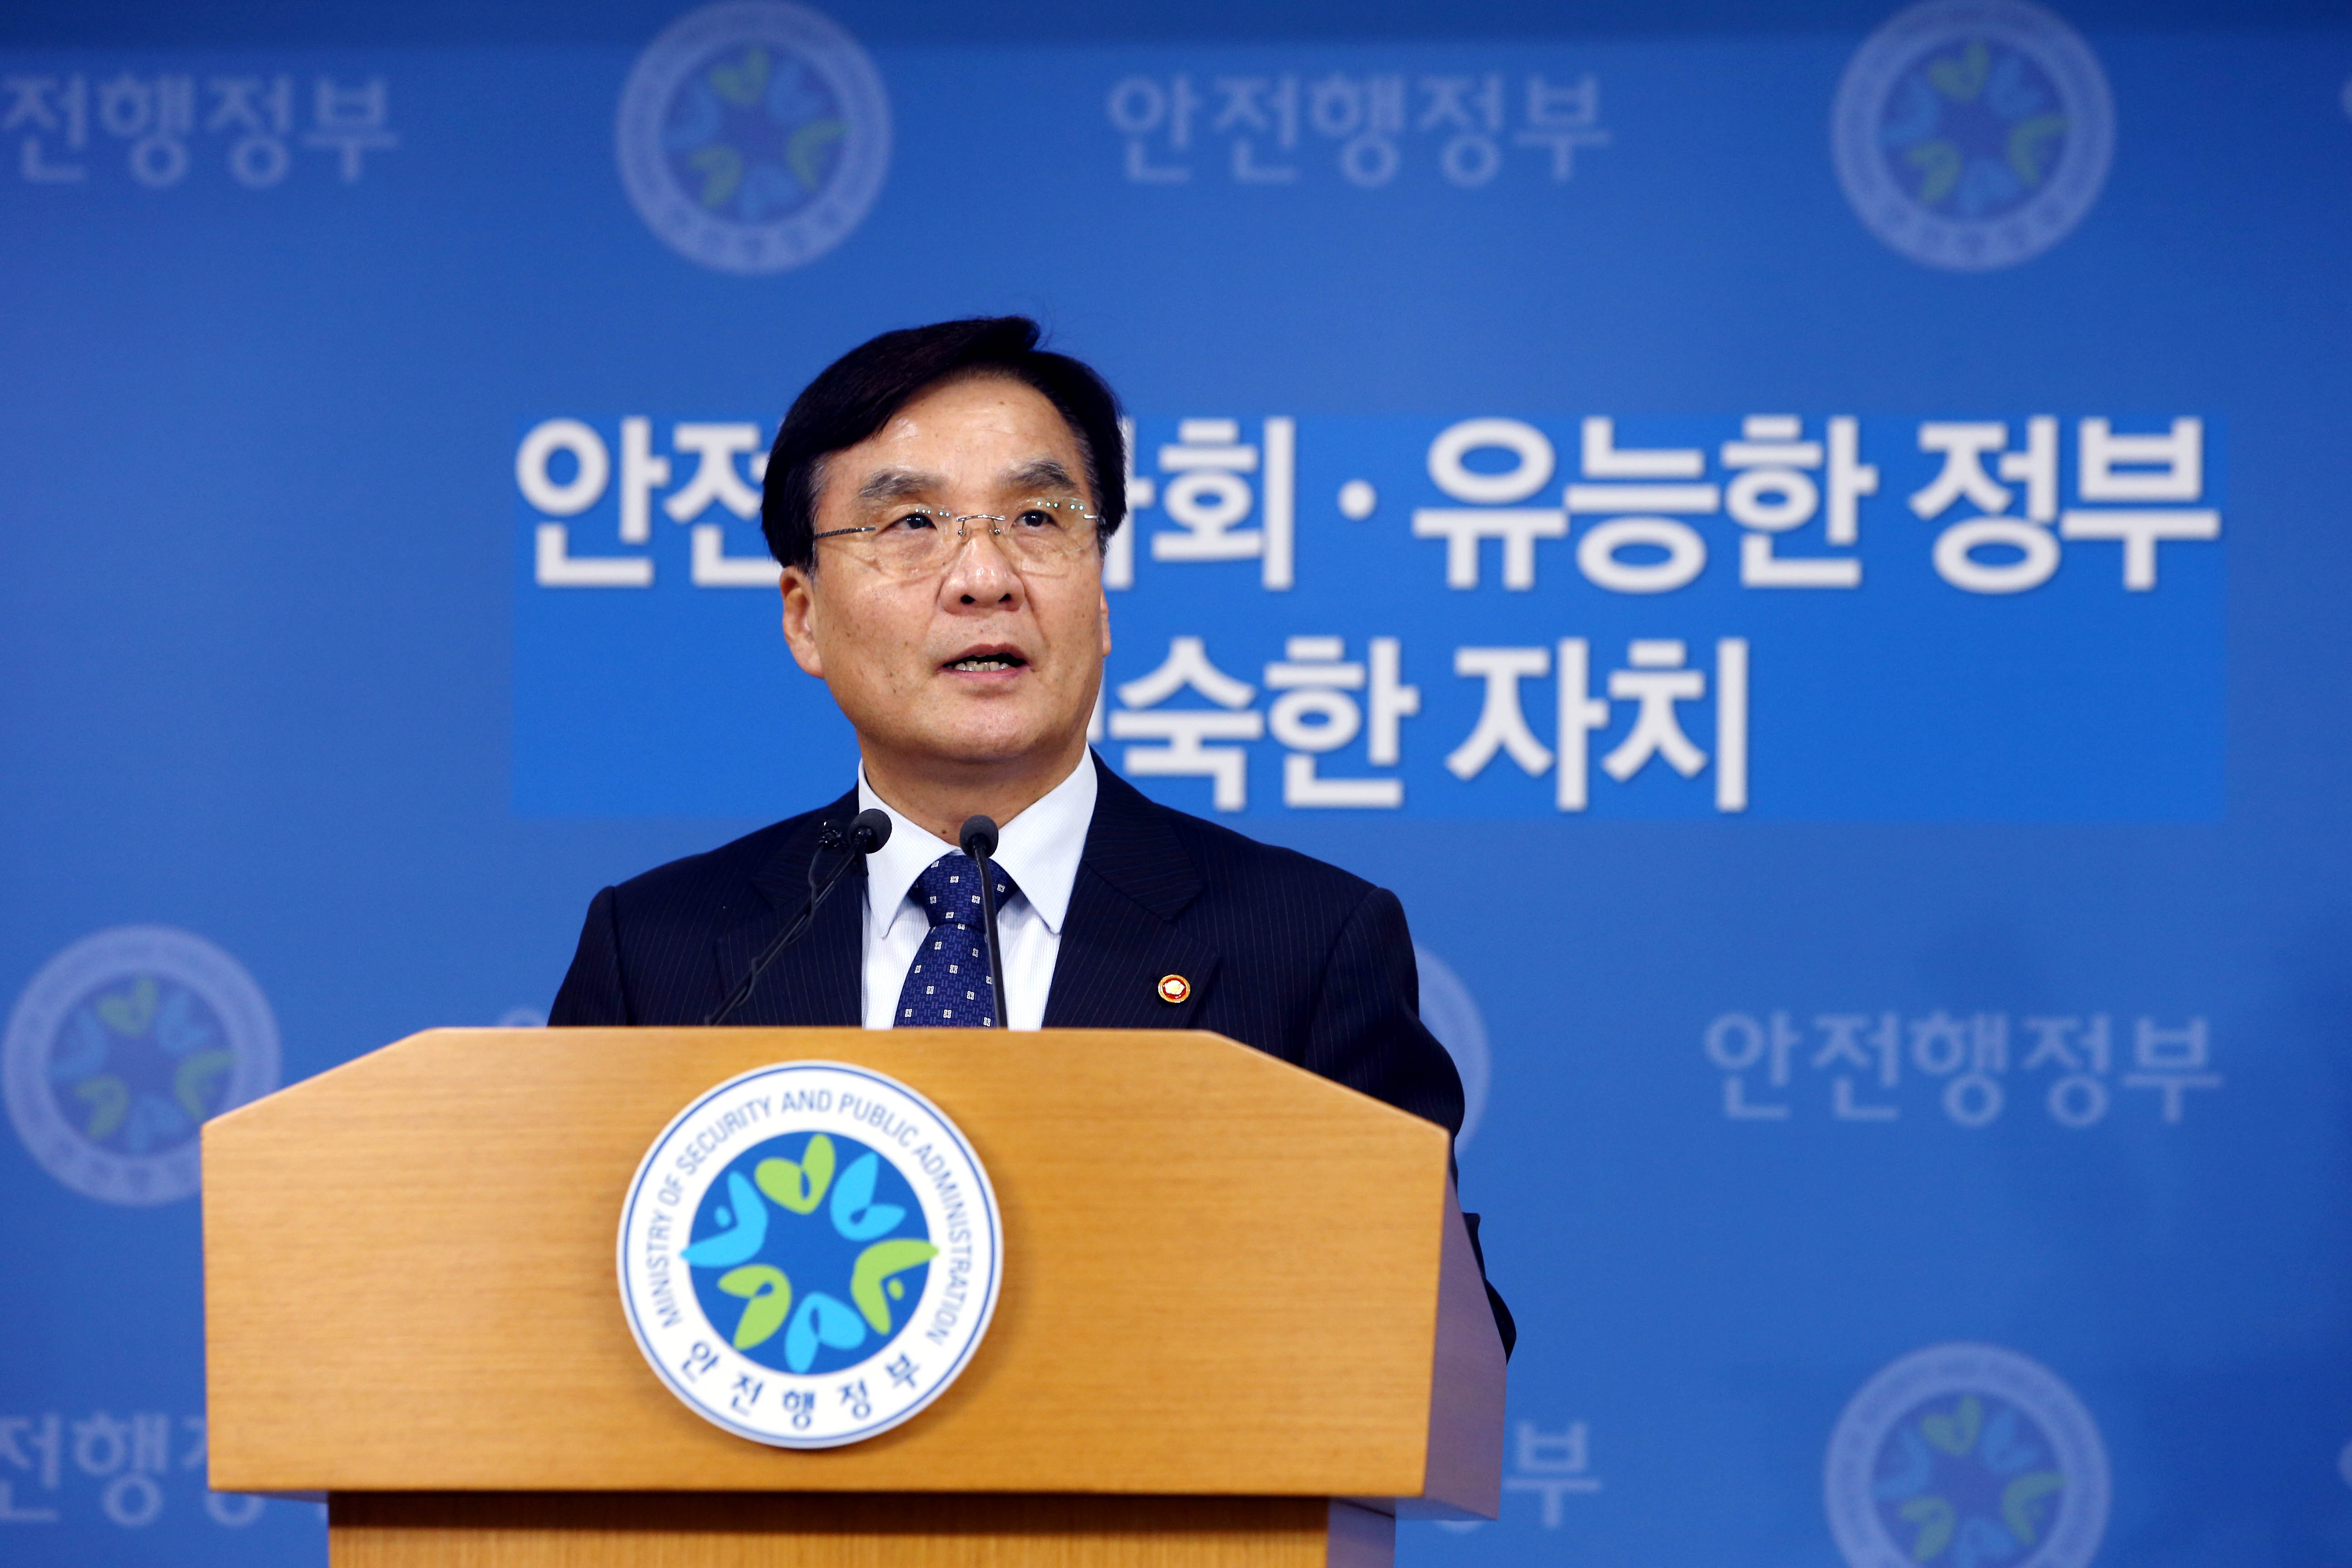 강병규 장관, 지자체 규제개선 관련 언론브리핑